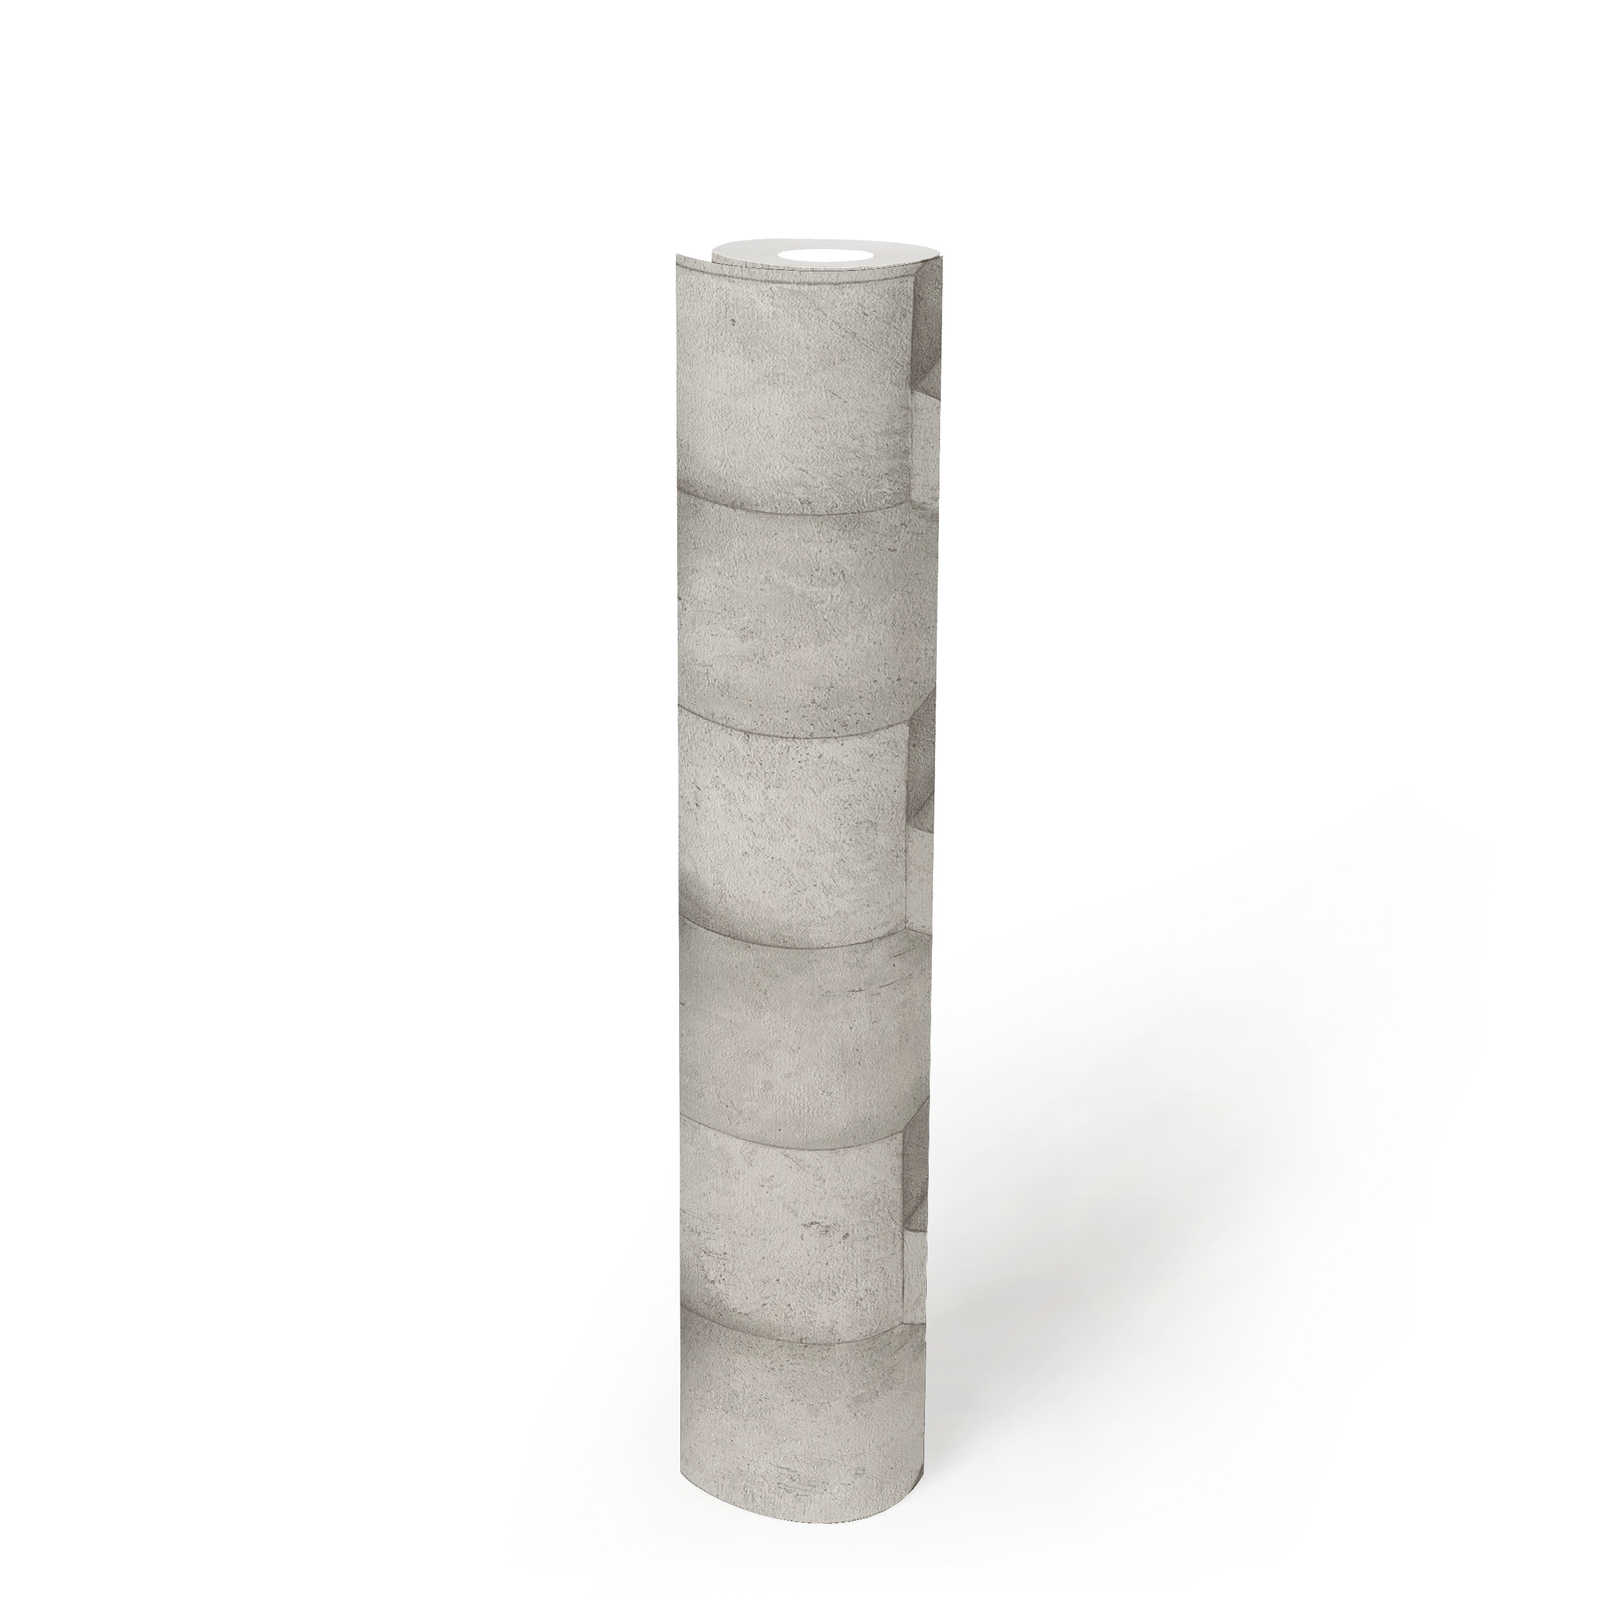             Papel pintado 3D piedra caliza con diseño de estructura - blanco, gris
        